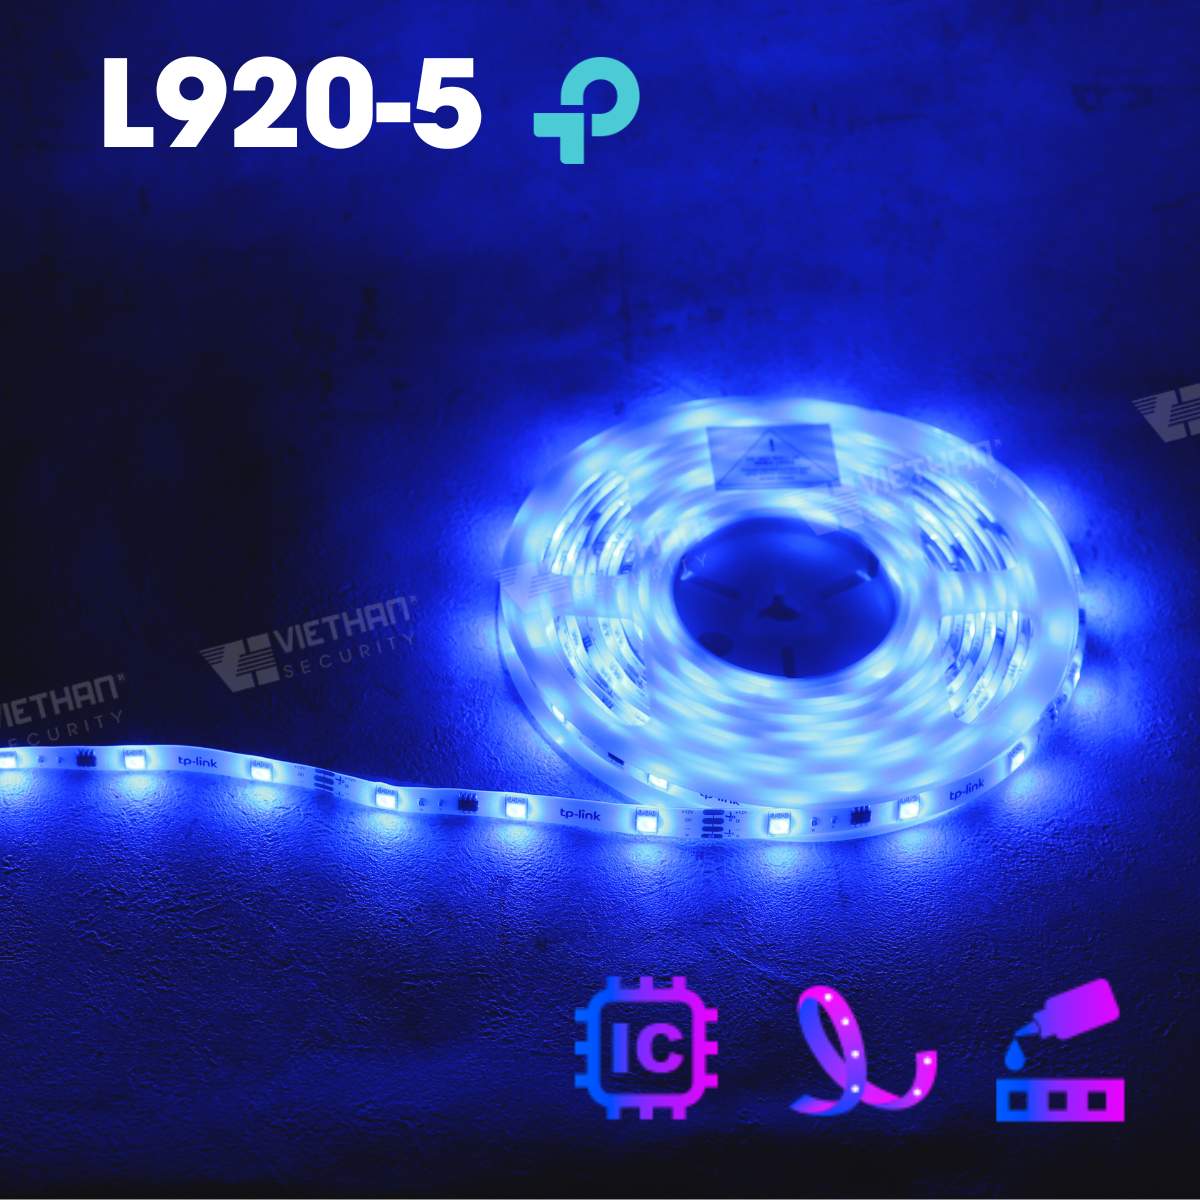 Bộ đèn LED thông minh TP-Link Tapo L920-5 nhiều màu sắc, có lớp bảo vệ bên ngoài, điều khiển bằng giọng nói